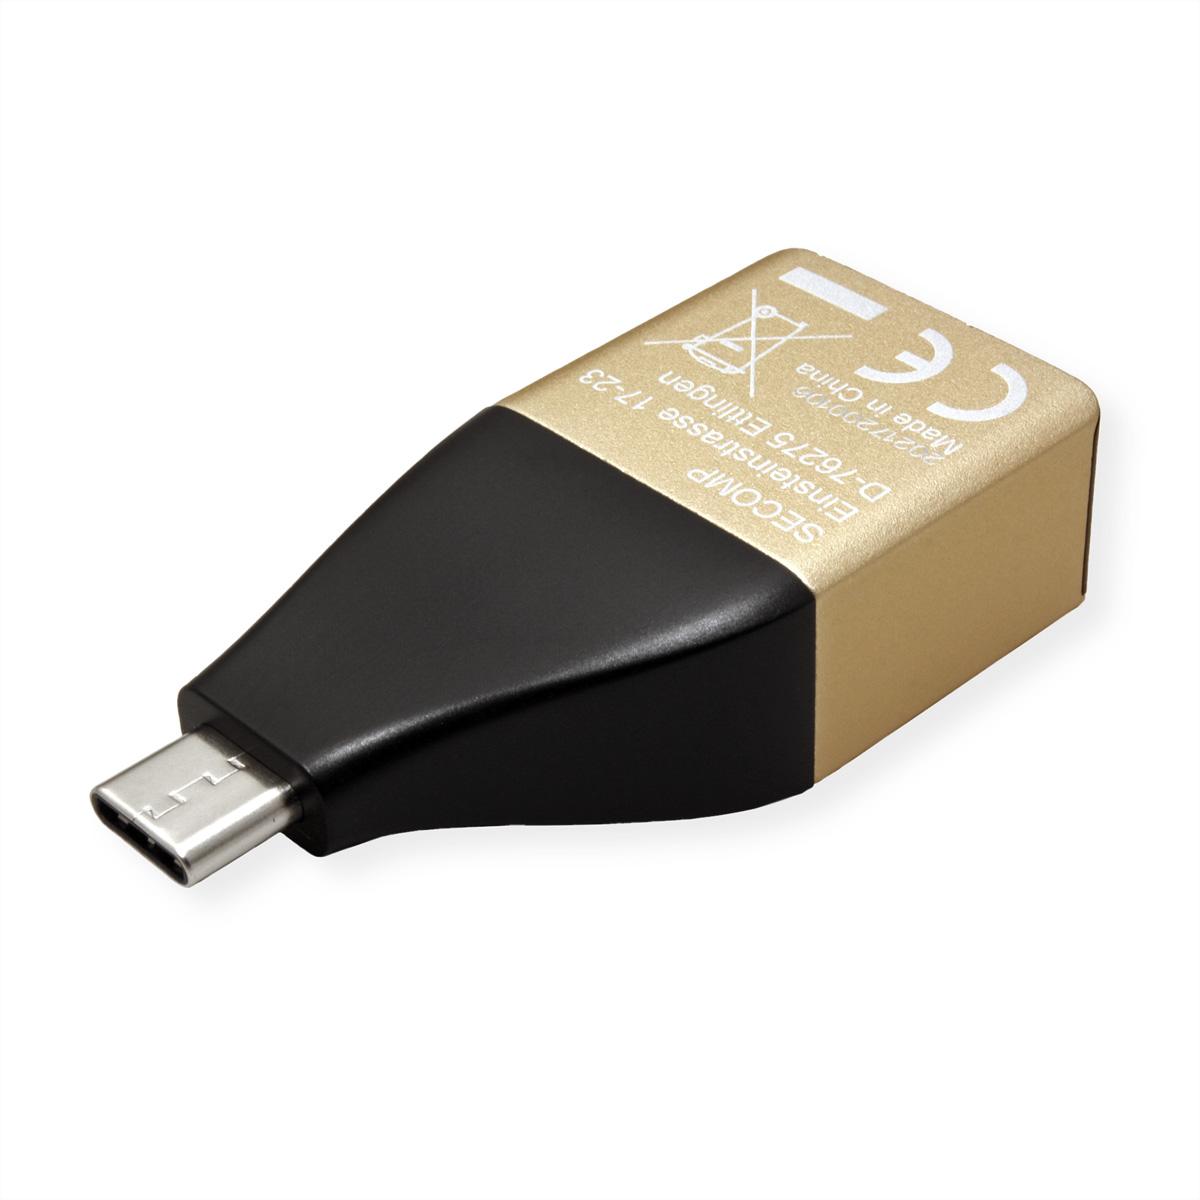 ROLINE GOLD 3.2 zu 2 Konverter Gen Gigabit Konverter Ethernet Ethernet Gigabit USB